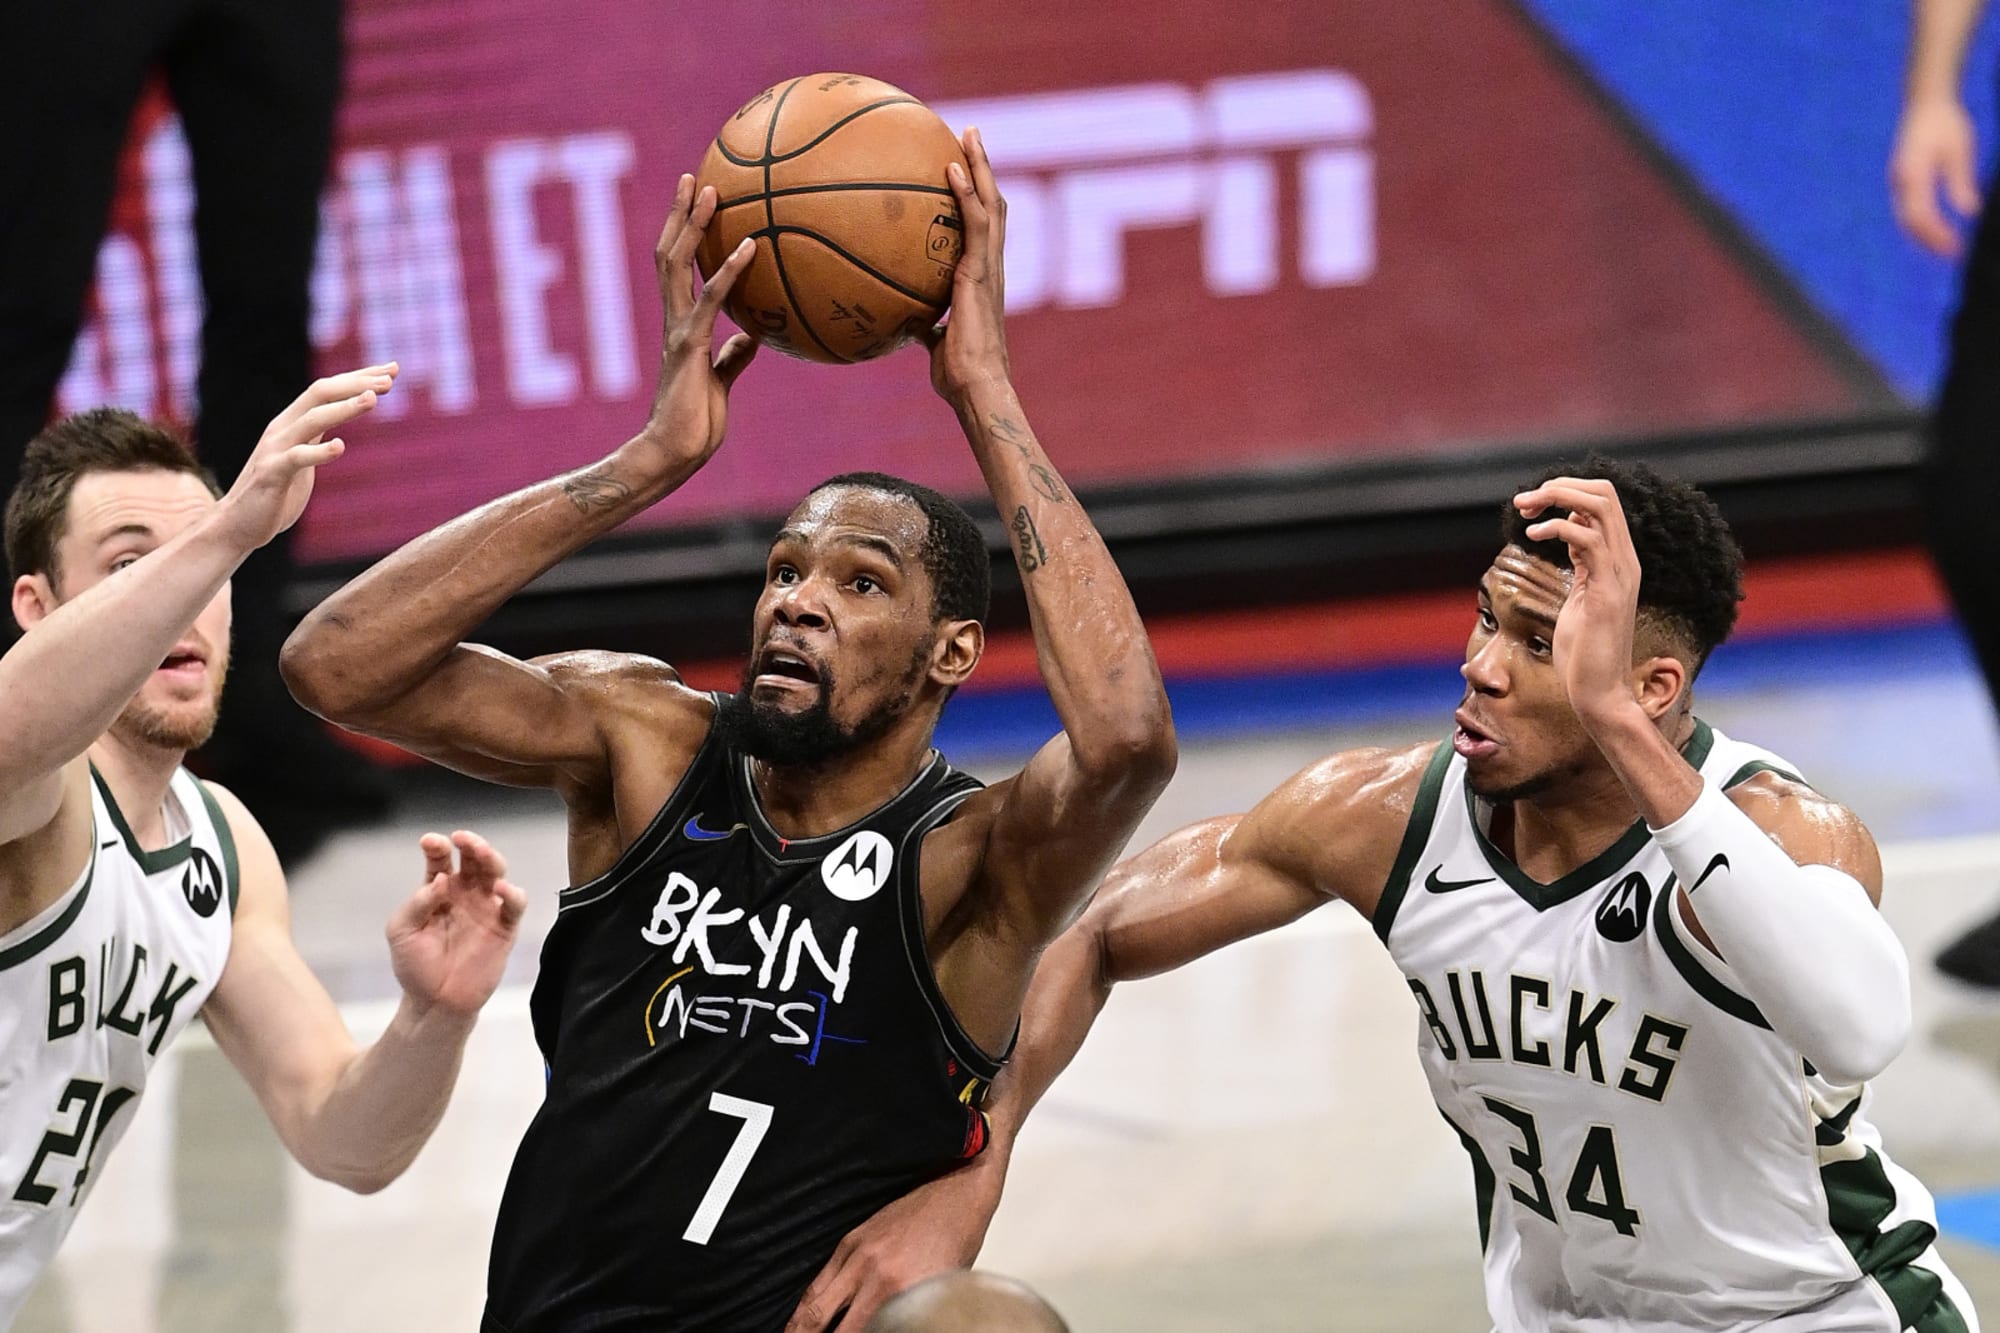 Nets–Raptors rivalry - Wikipedia